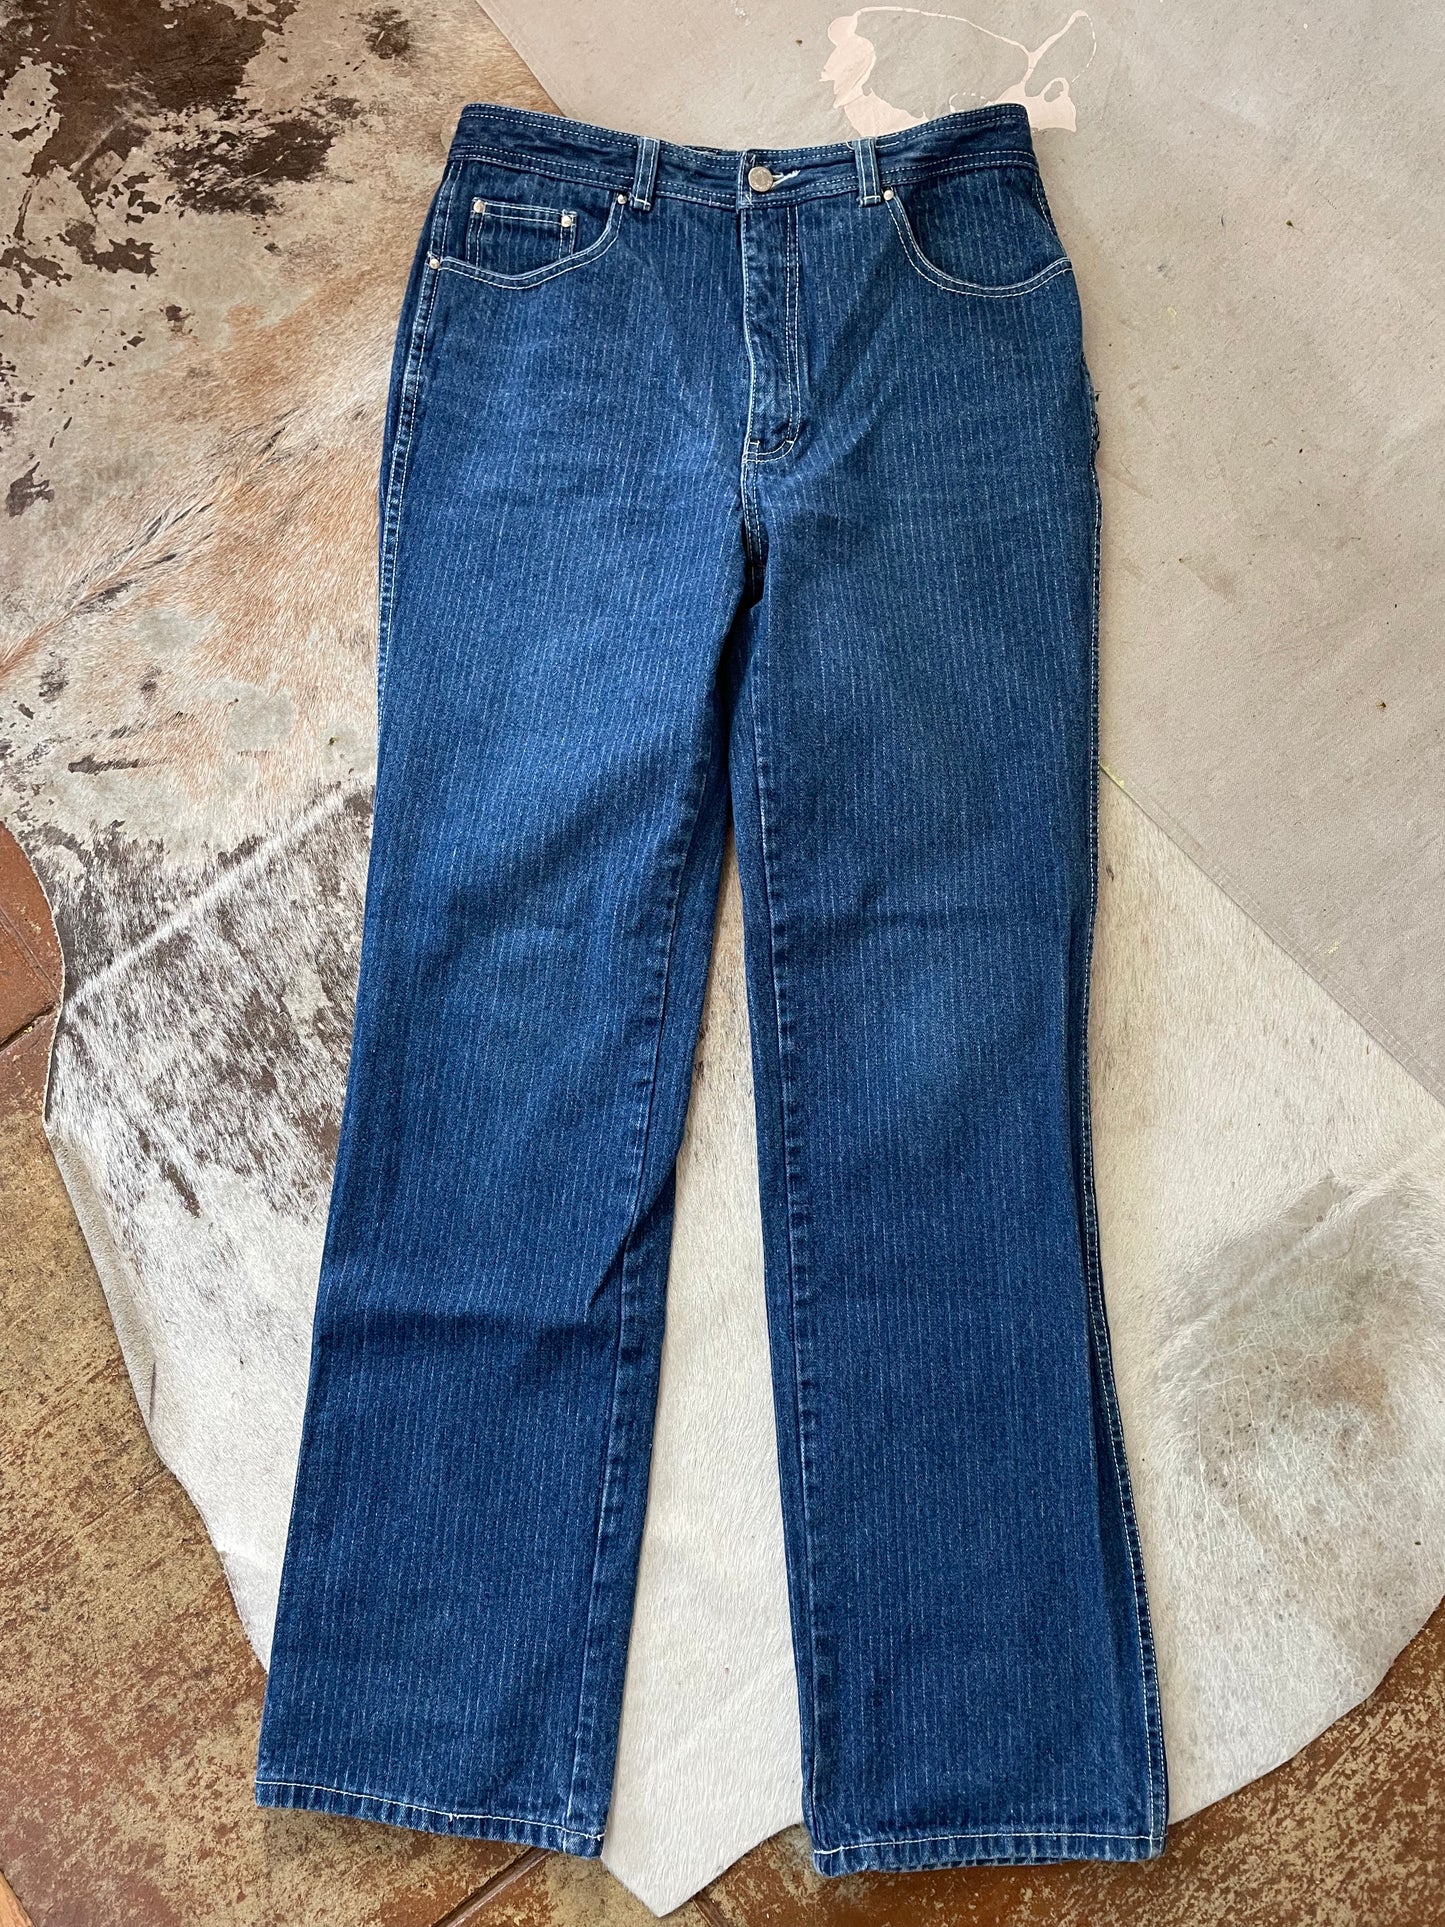 80s Jordache Pinstripe Jeans